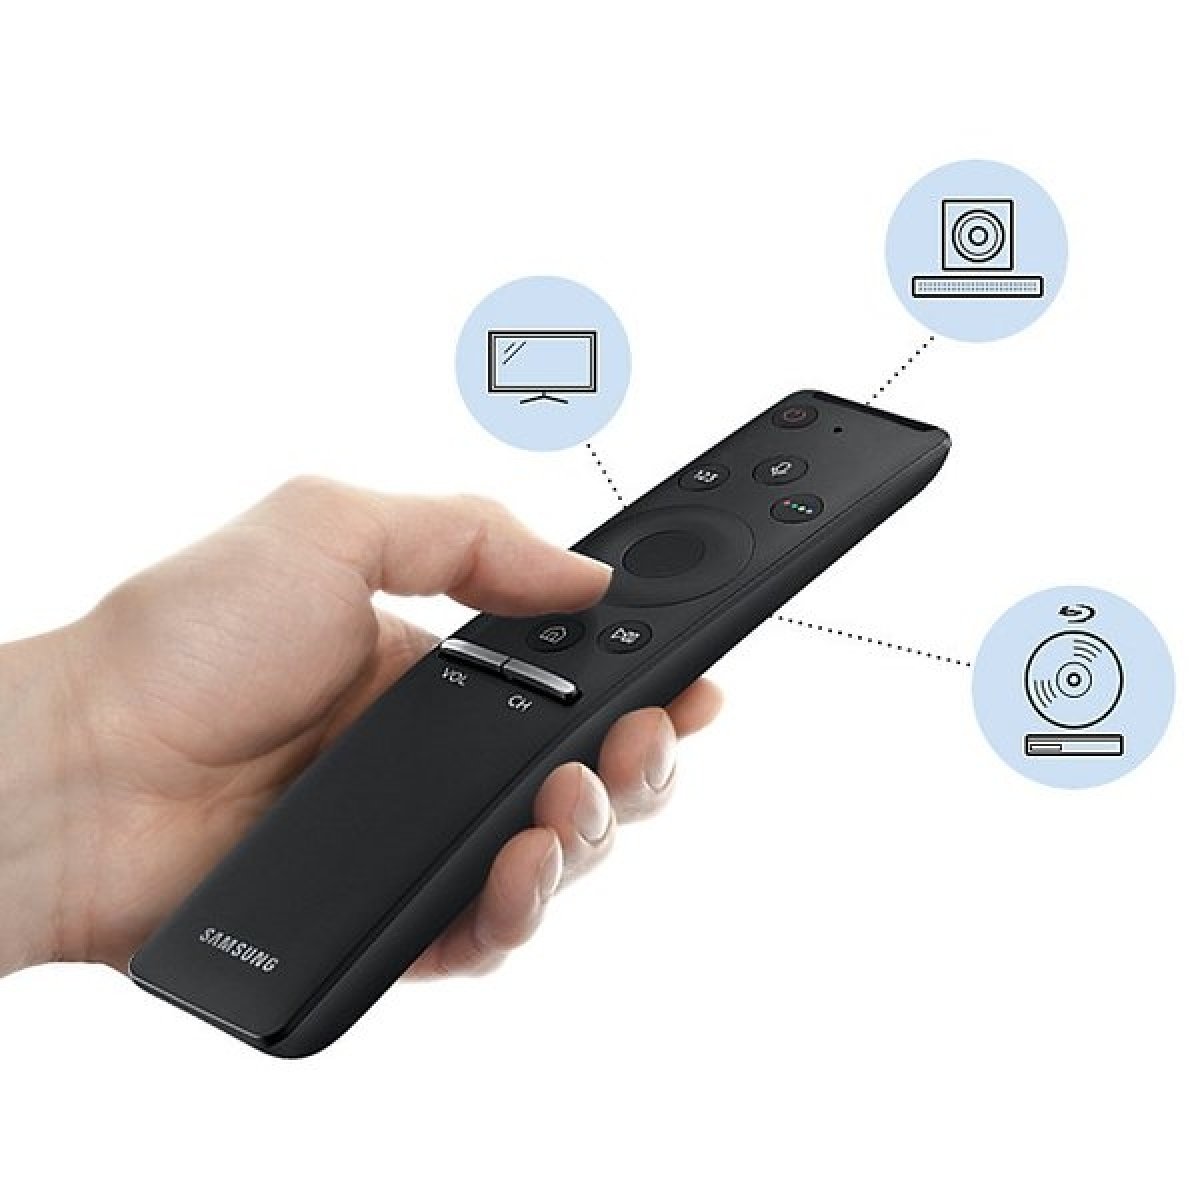 Ovladač od televize Samsung je další možnost, jak soundbar ovládat